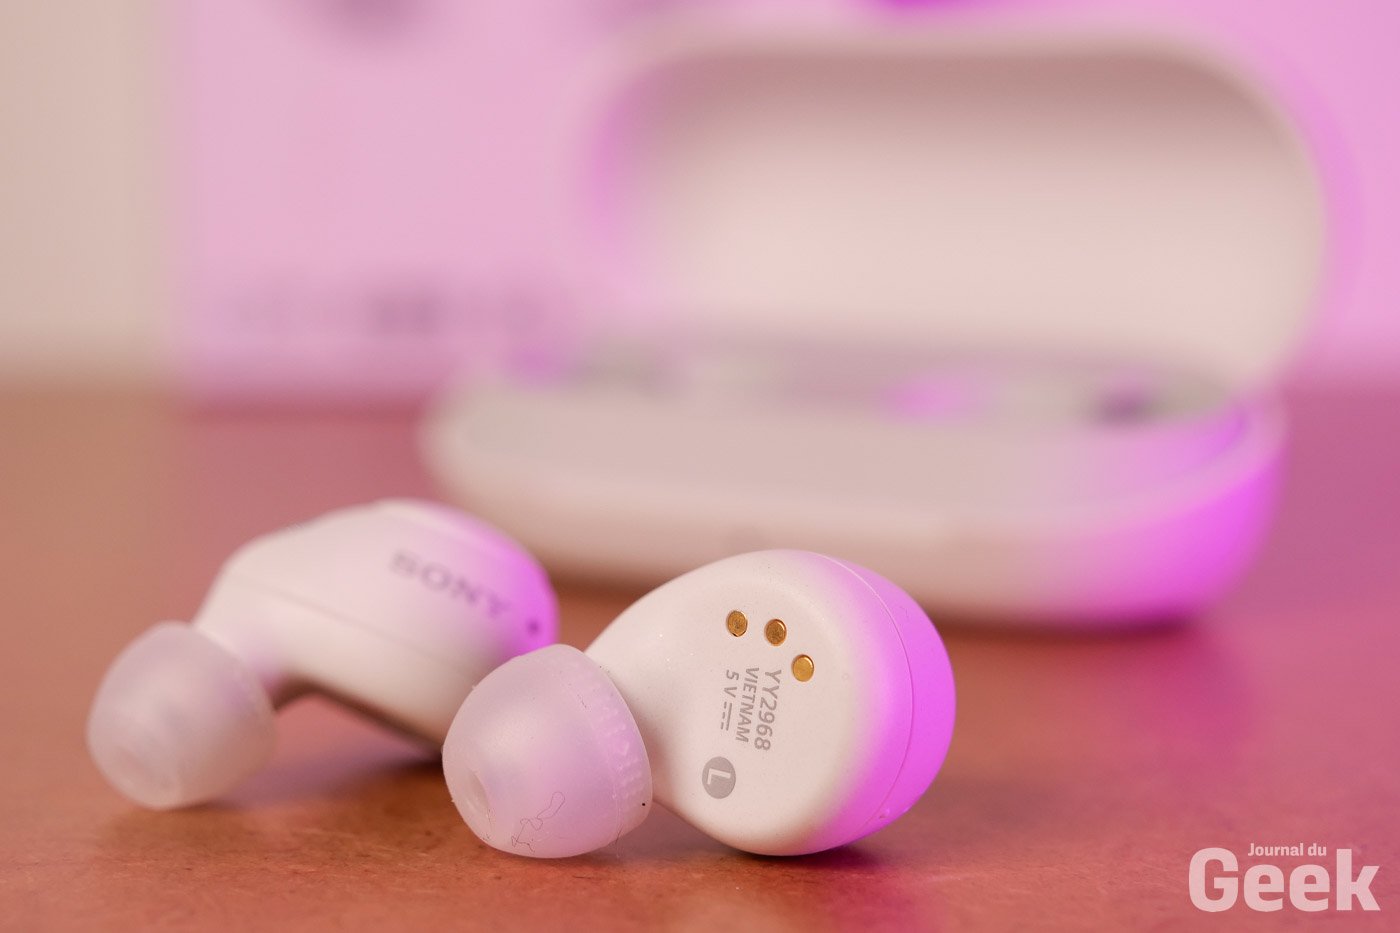 Sony WF-C700N - Écouteurs Bluetooth® sans Fil avec Reduction de Bruit -  Légers et Confortables - Autonomie